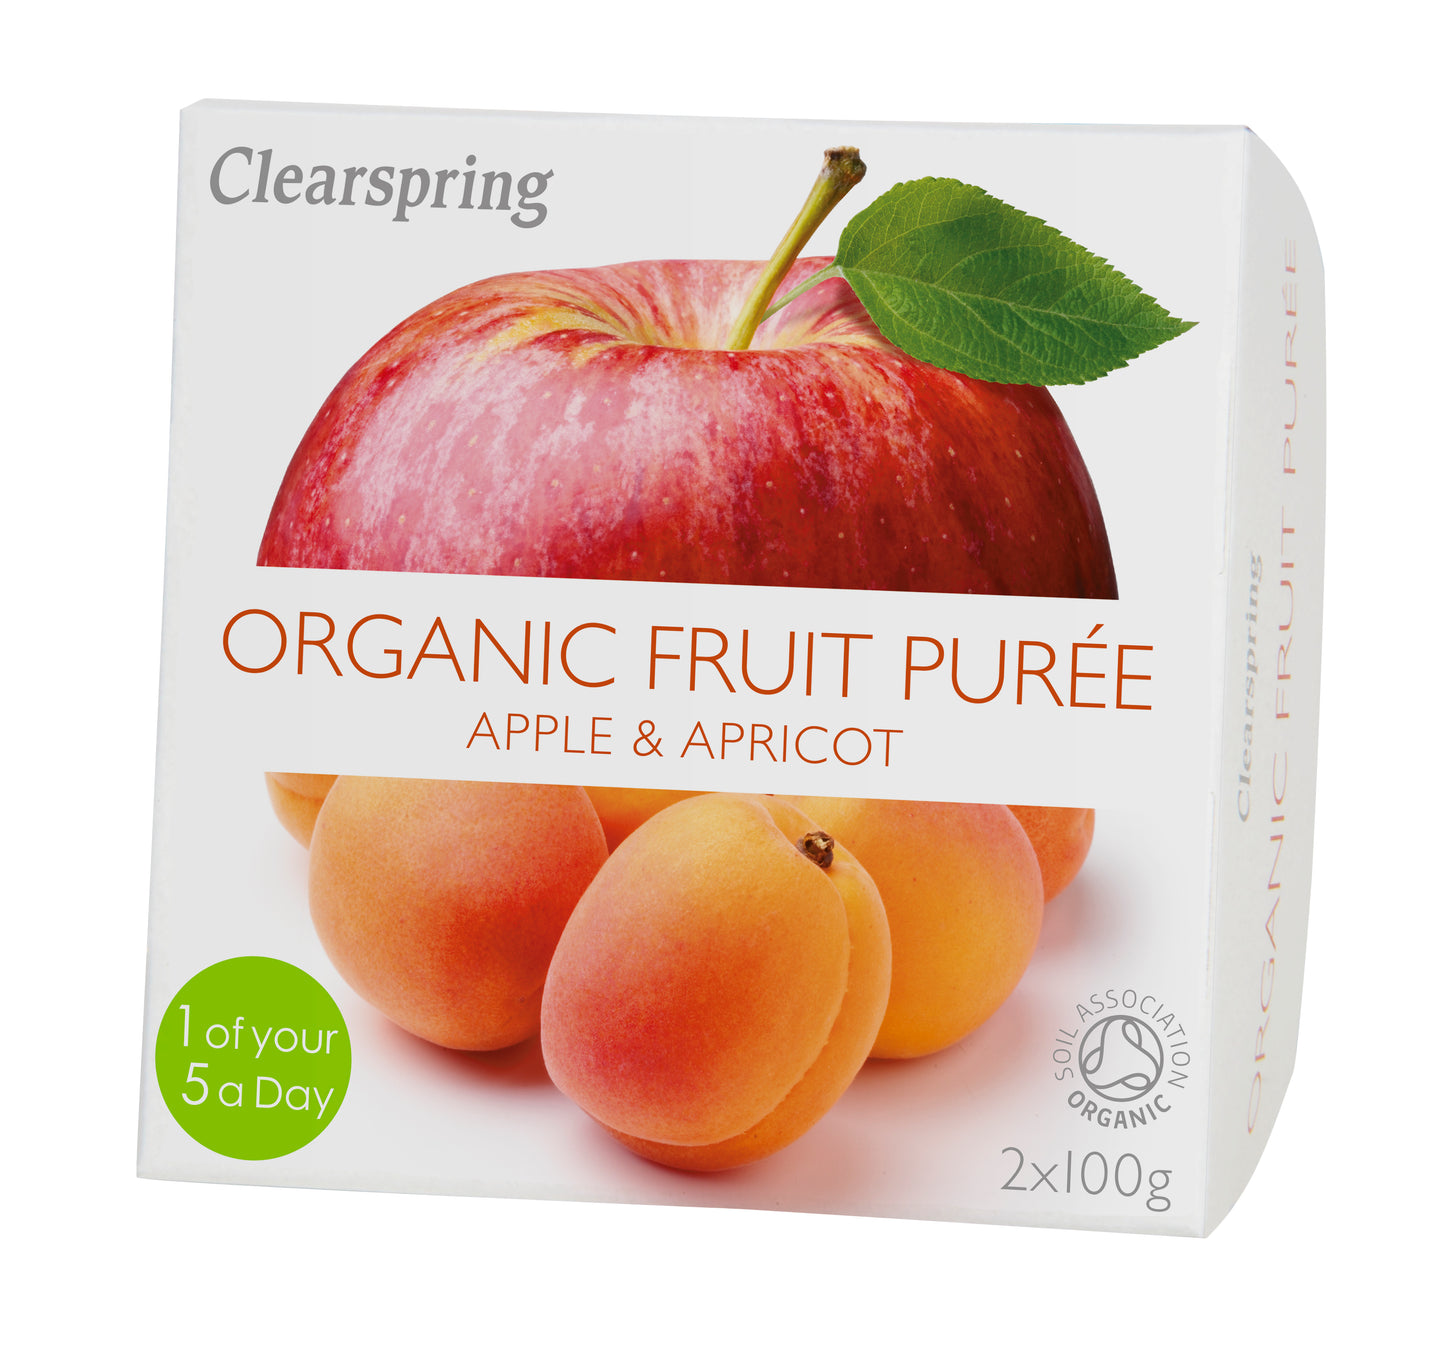 Organic Fruit Purée - Apple & Apricot (2x100g)